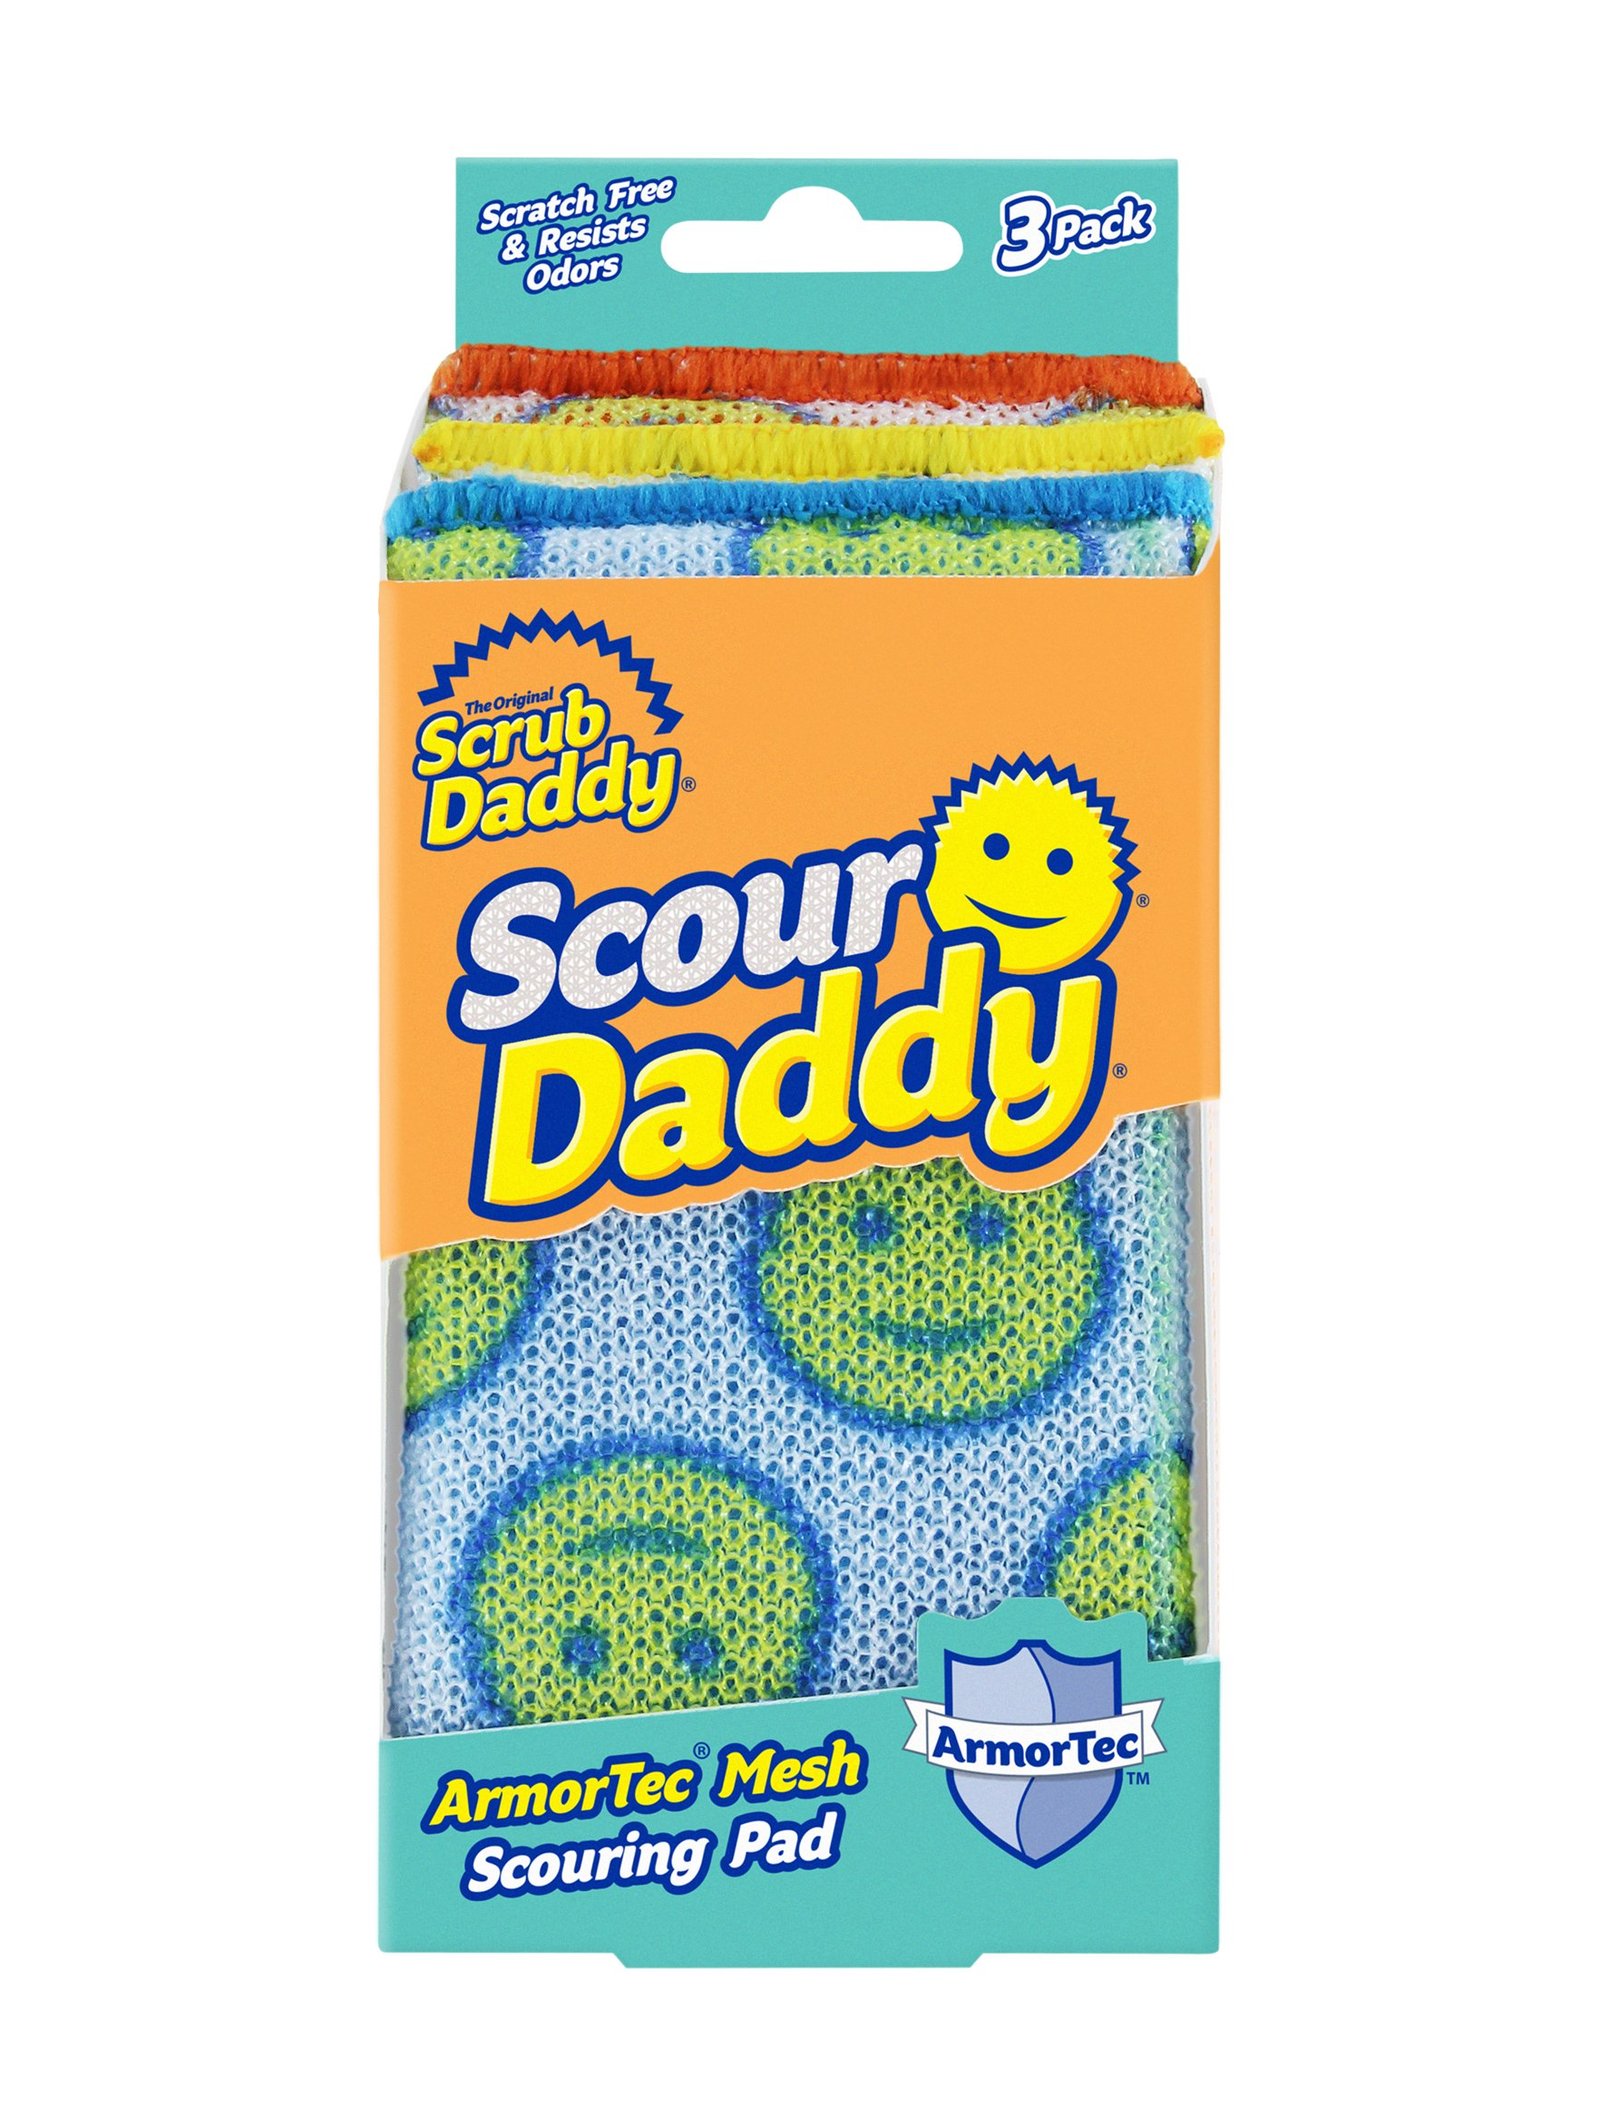 Scrub Daddy Scour Daddy 3-pack